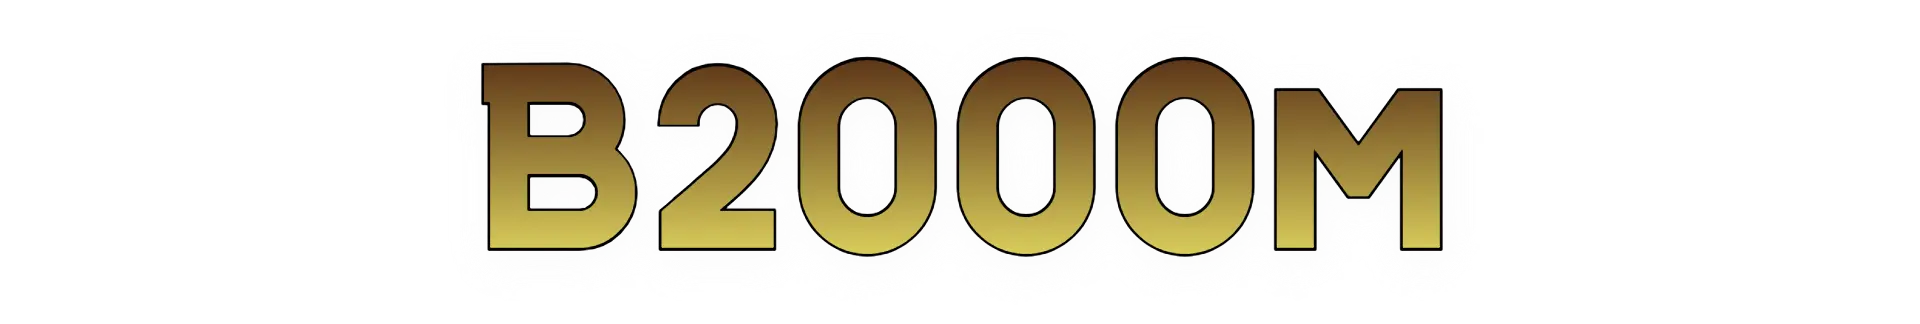 B2000m